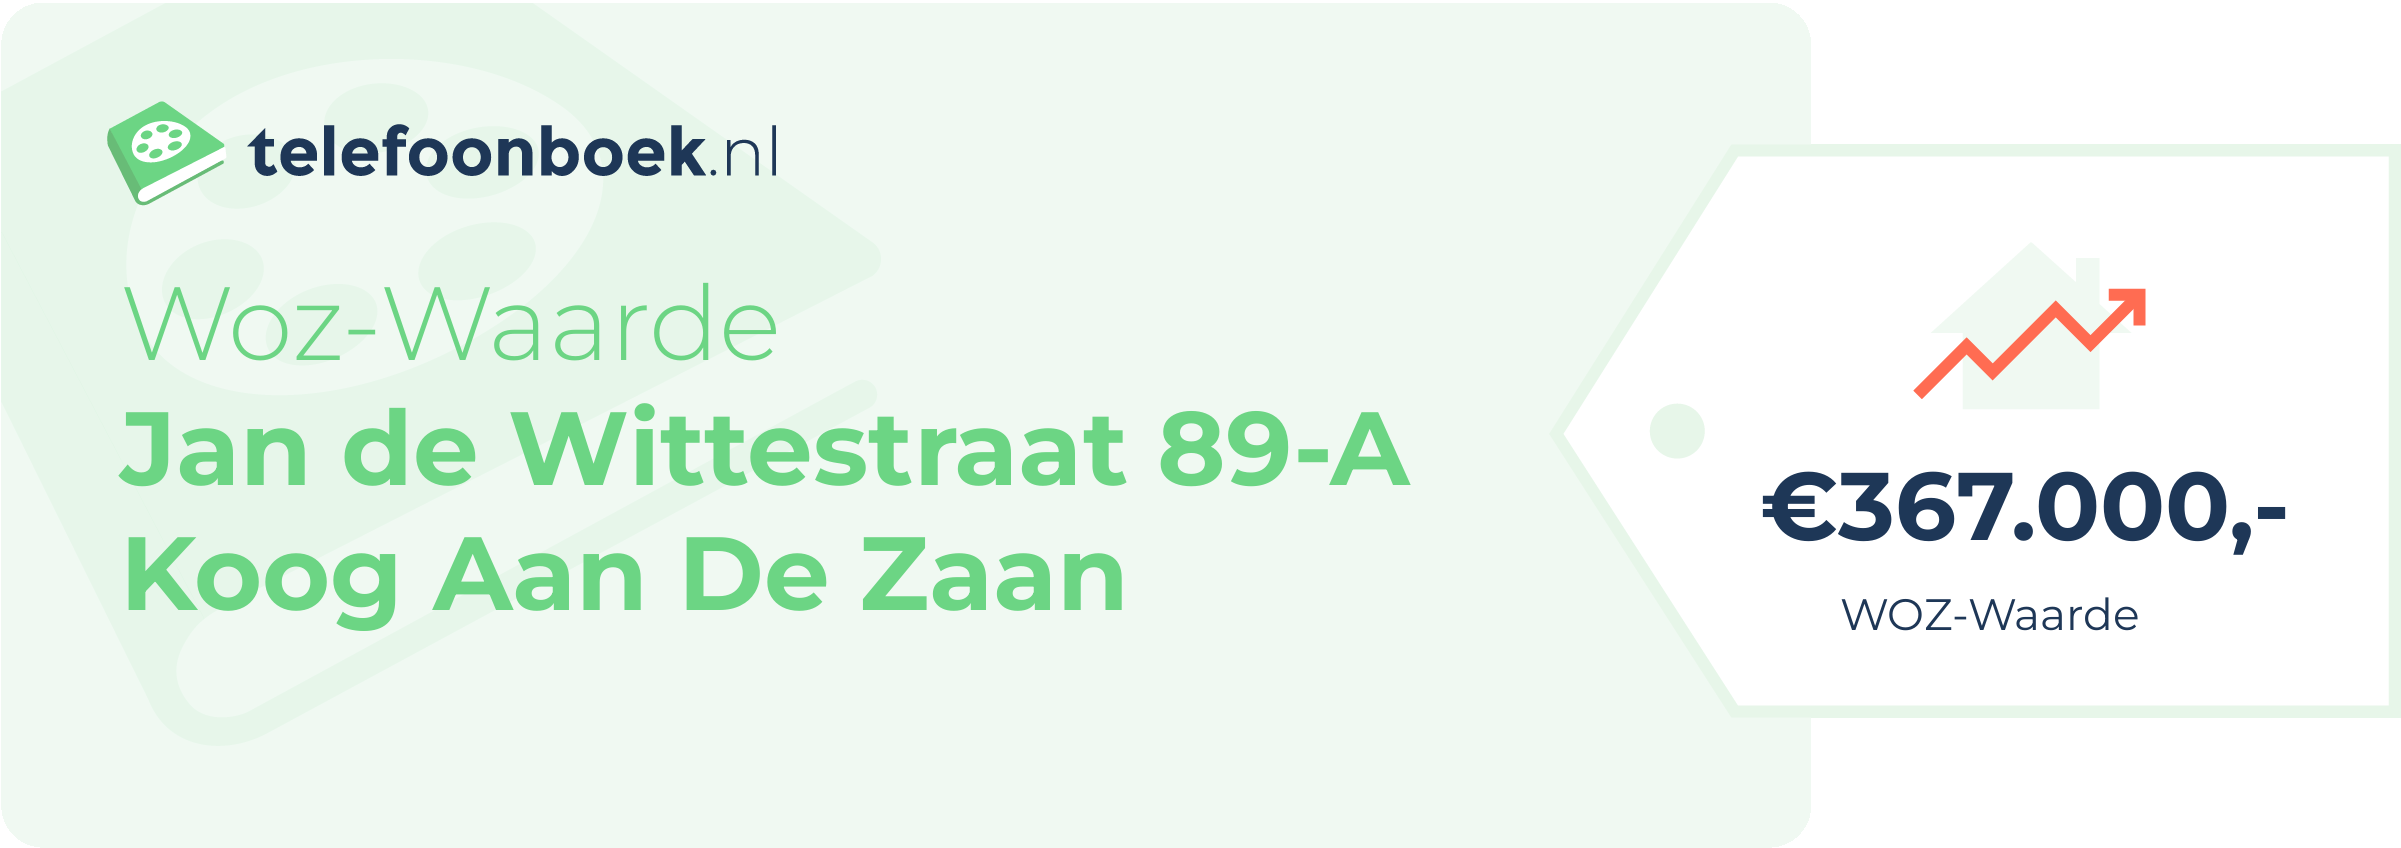 WOZ-waarde Jan De Wittestraat 89-A Koog Aan De Zaan